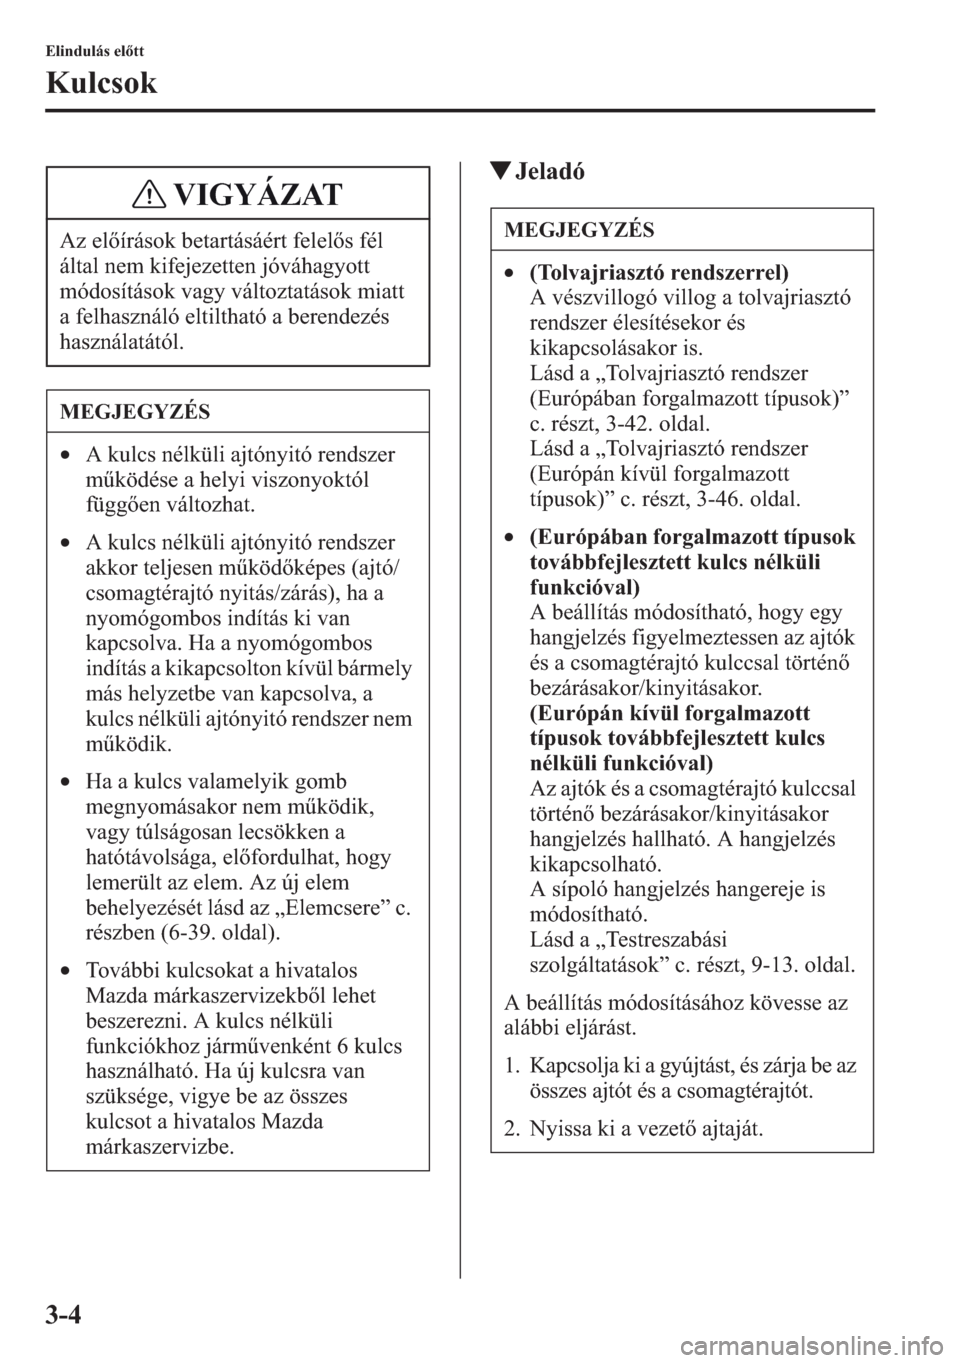 MAZDA MODEL CX-5 2013  Kezelési útmutató (in Hungarian) 3-4
Elindulás eltt
Kulcsok
tJeladó
Az elírások betartásáért felels fél 
által nem kifejezetten jóváhagyott 
módosítások vagy változtatások miatt 
a felhasználó eltiltható a beren